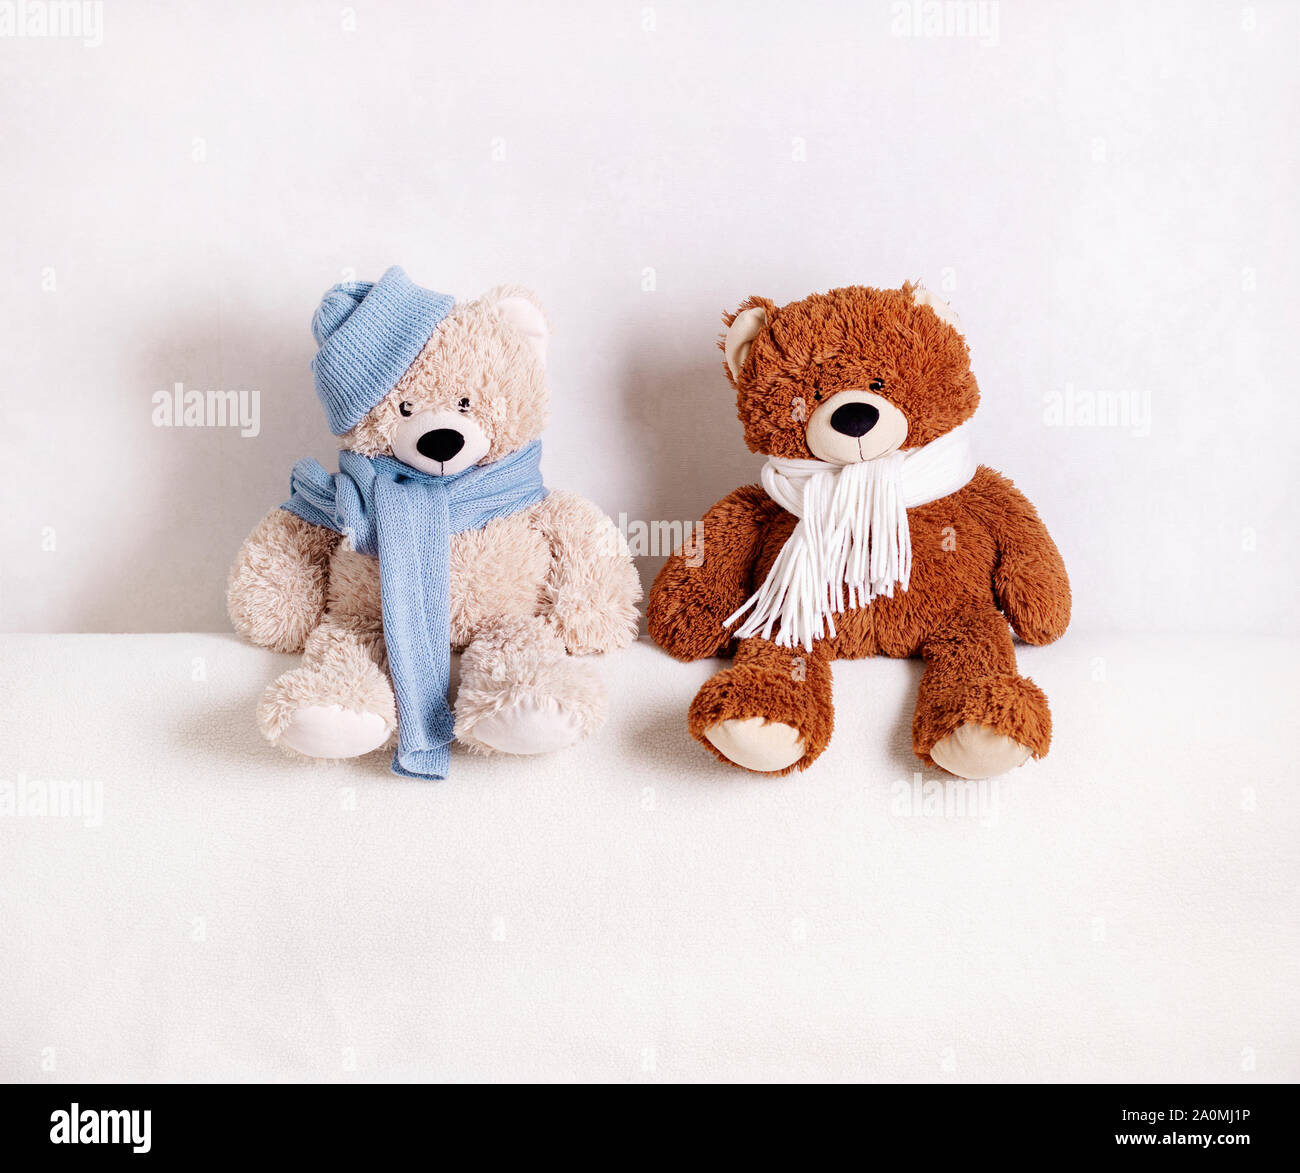 Kinder Spielzeug Teddybären sitzen auf einem weißen Sofa in einem gestrickt, weißen und blauen Schal und Hut. Selektive konzentrieren. Stockfoto